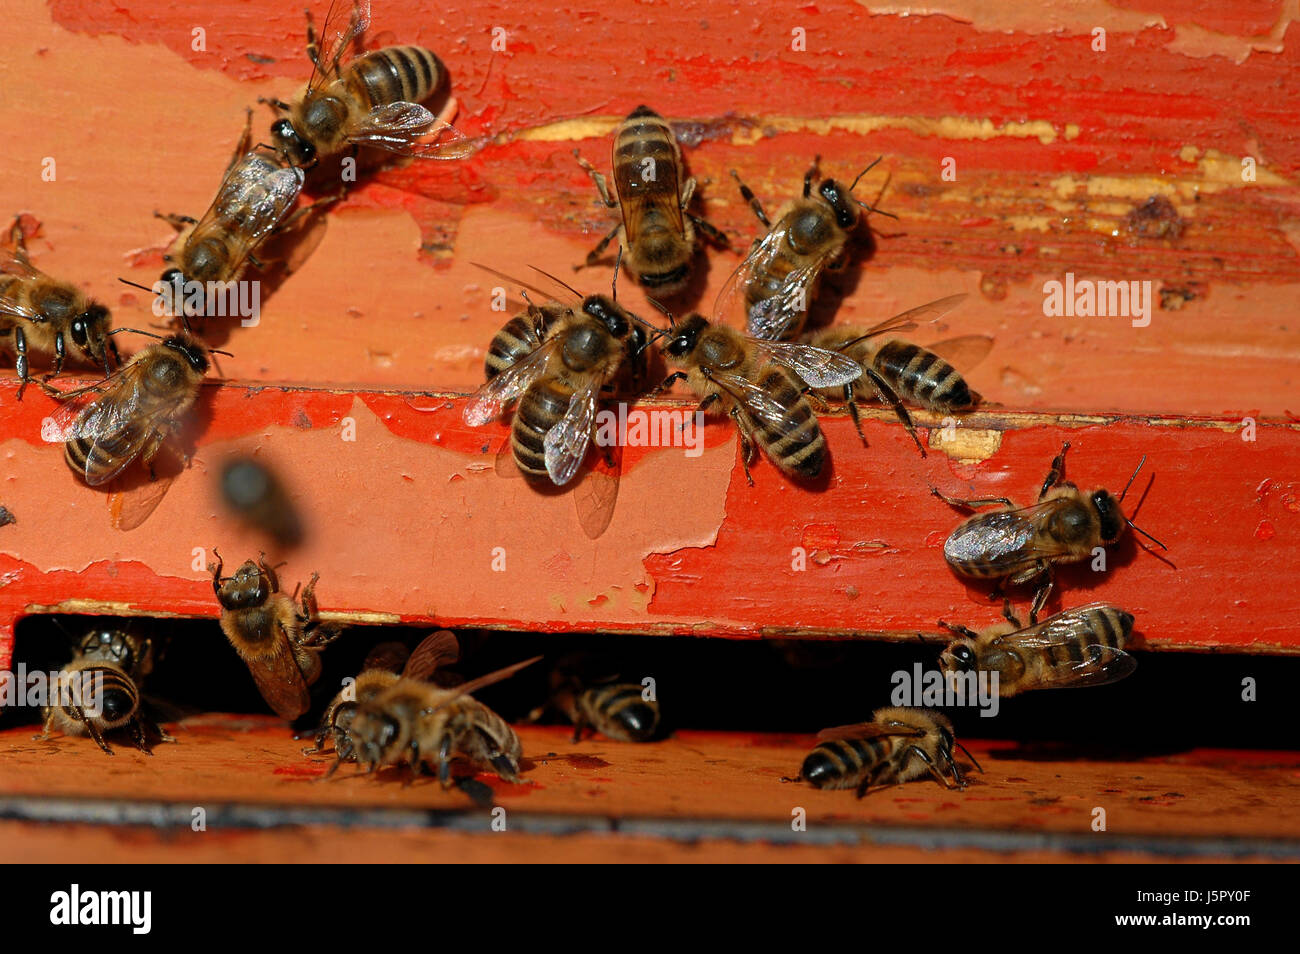 Cibo aliment sociale gli insetti di colore bruno marrone brunette colonia di api di zucchero Foto Stock